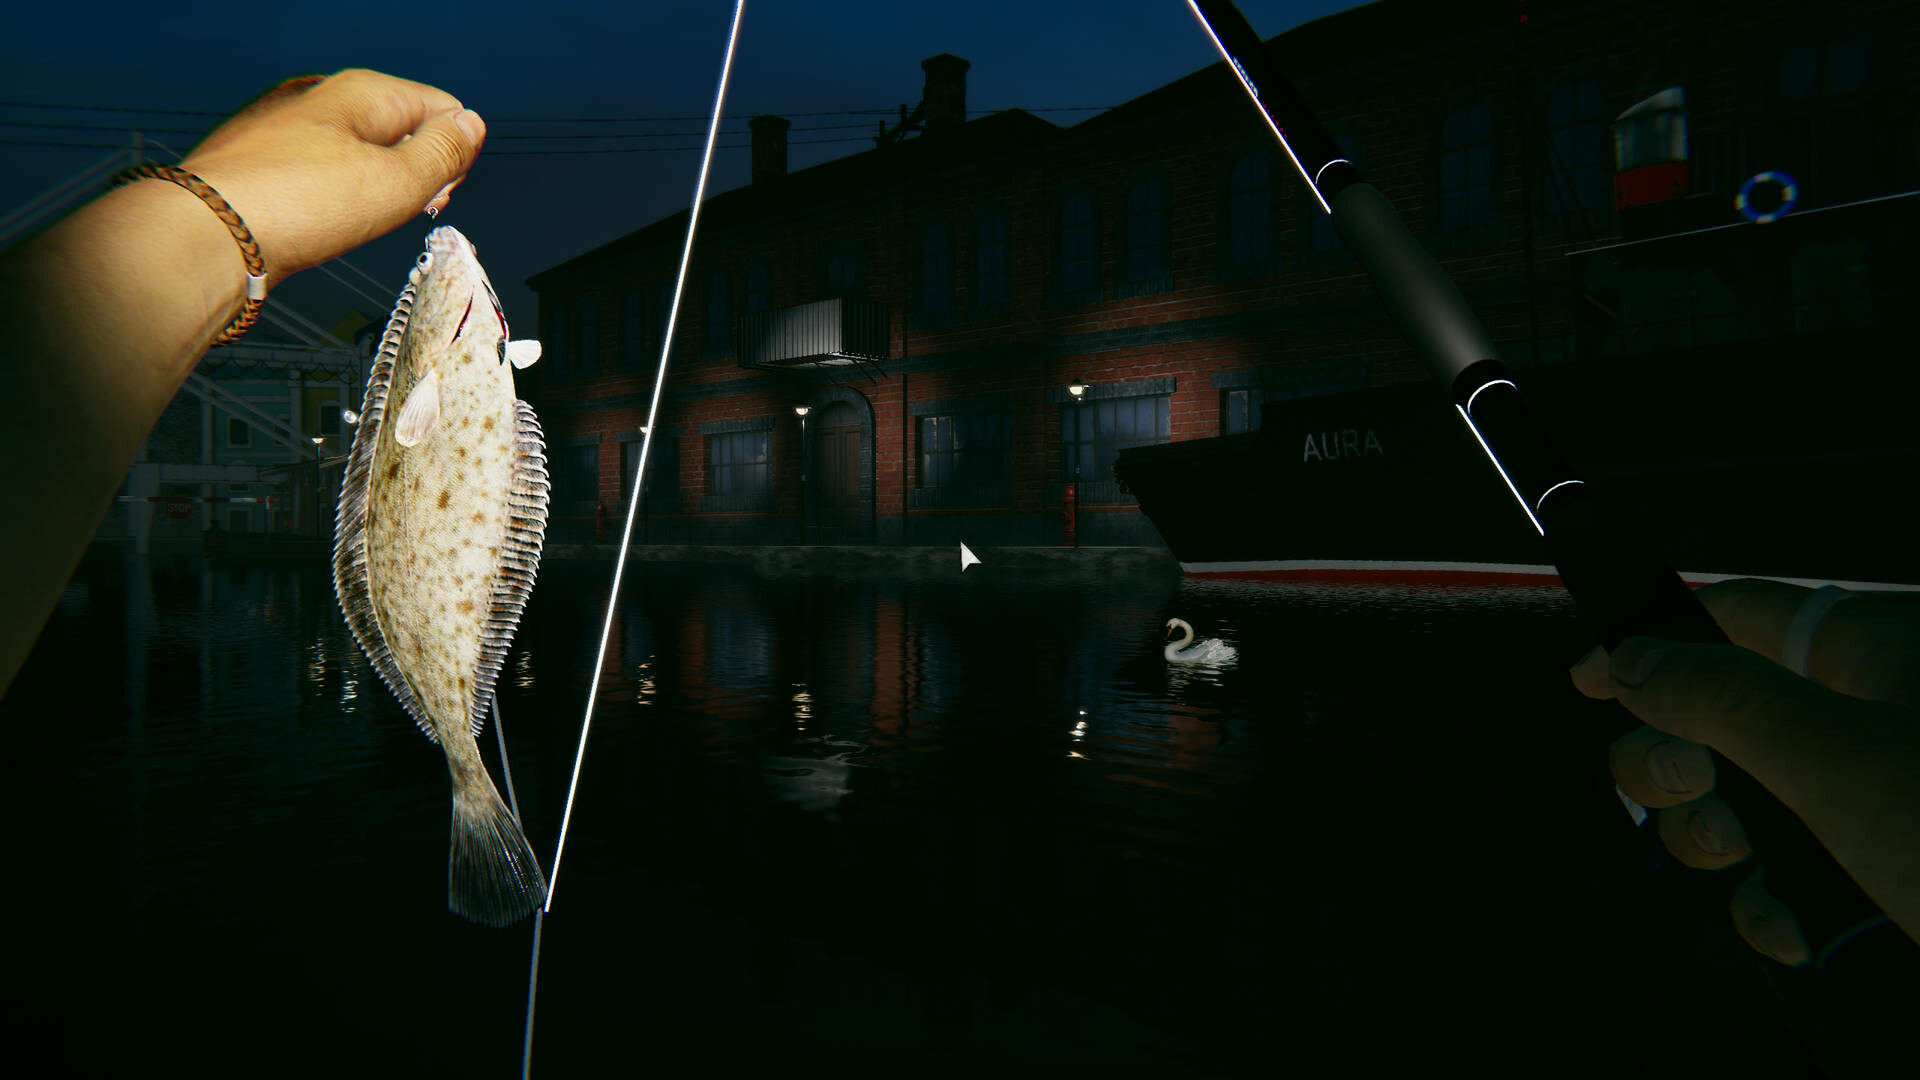 Ultimate Fishing Simulator 2 Free Download